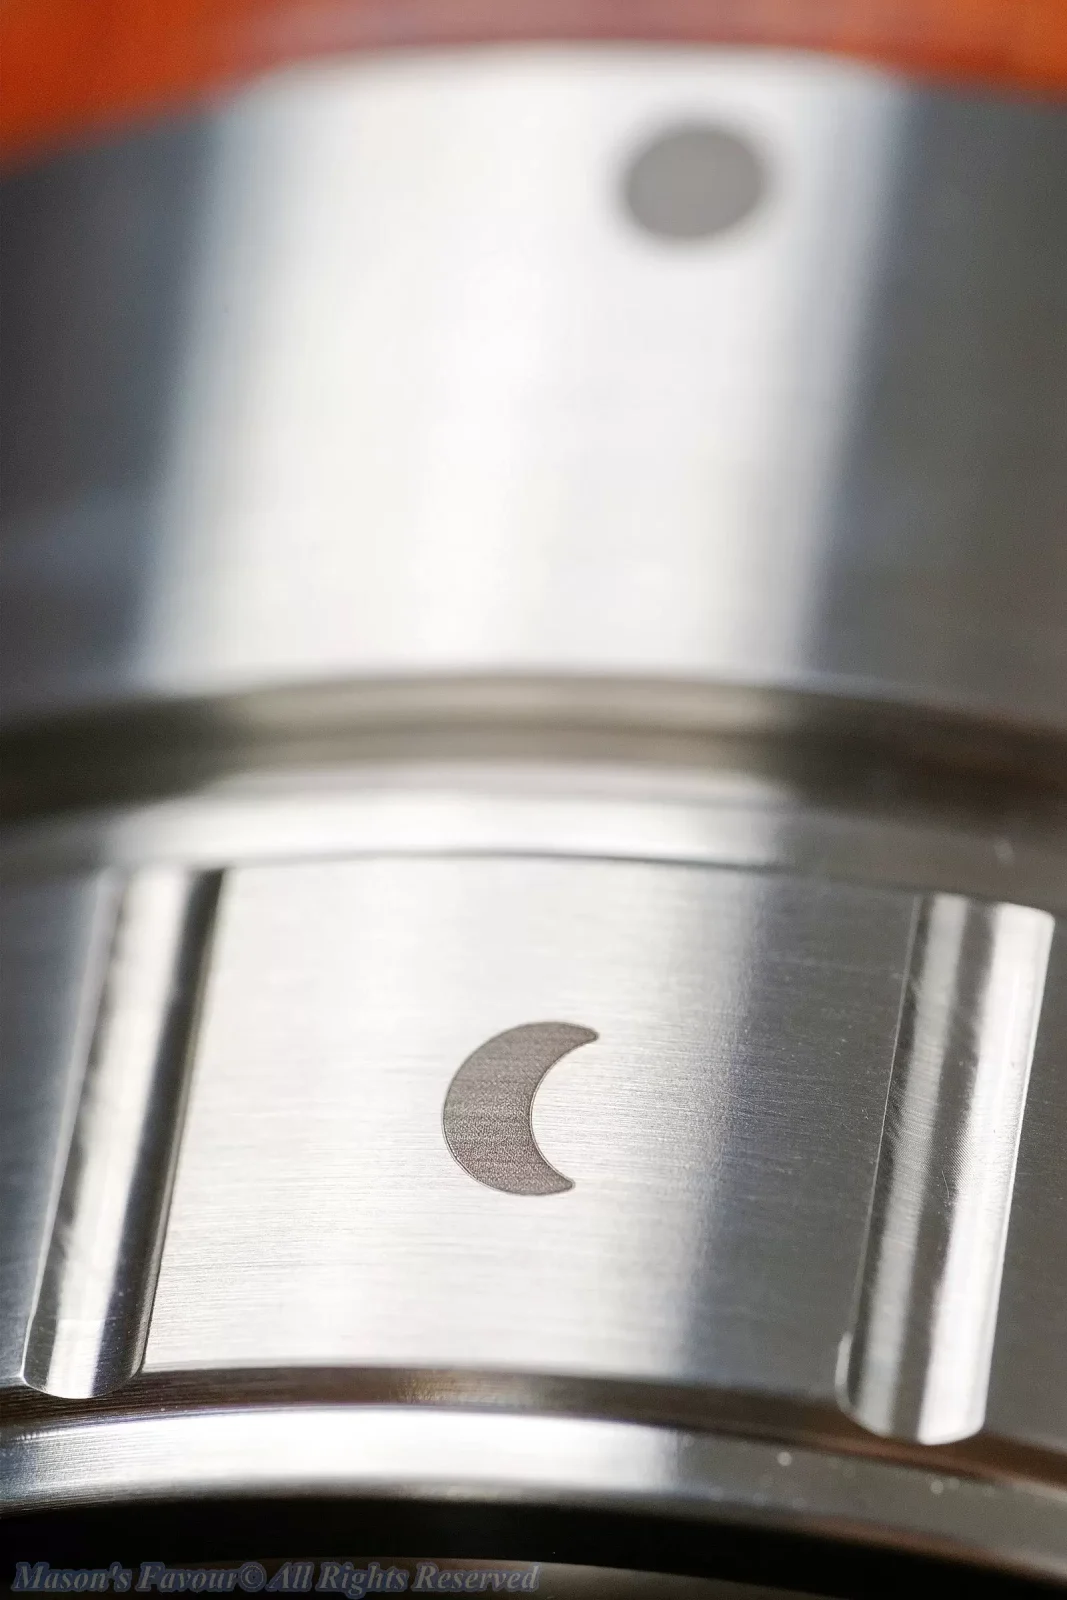 Aram Espresso Maker, Aram Coffee Maker - Portafilter, Enlarged View, Alignment Moon Mark